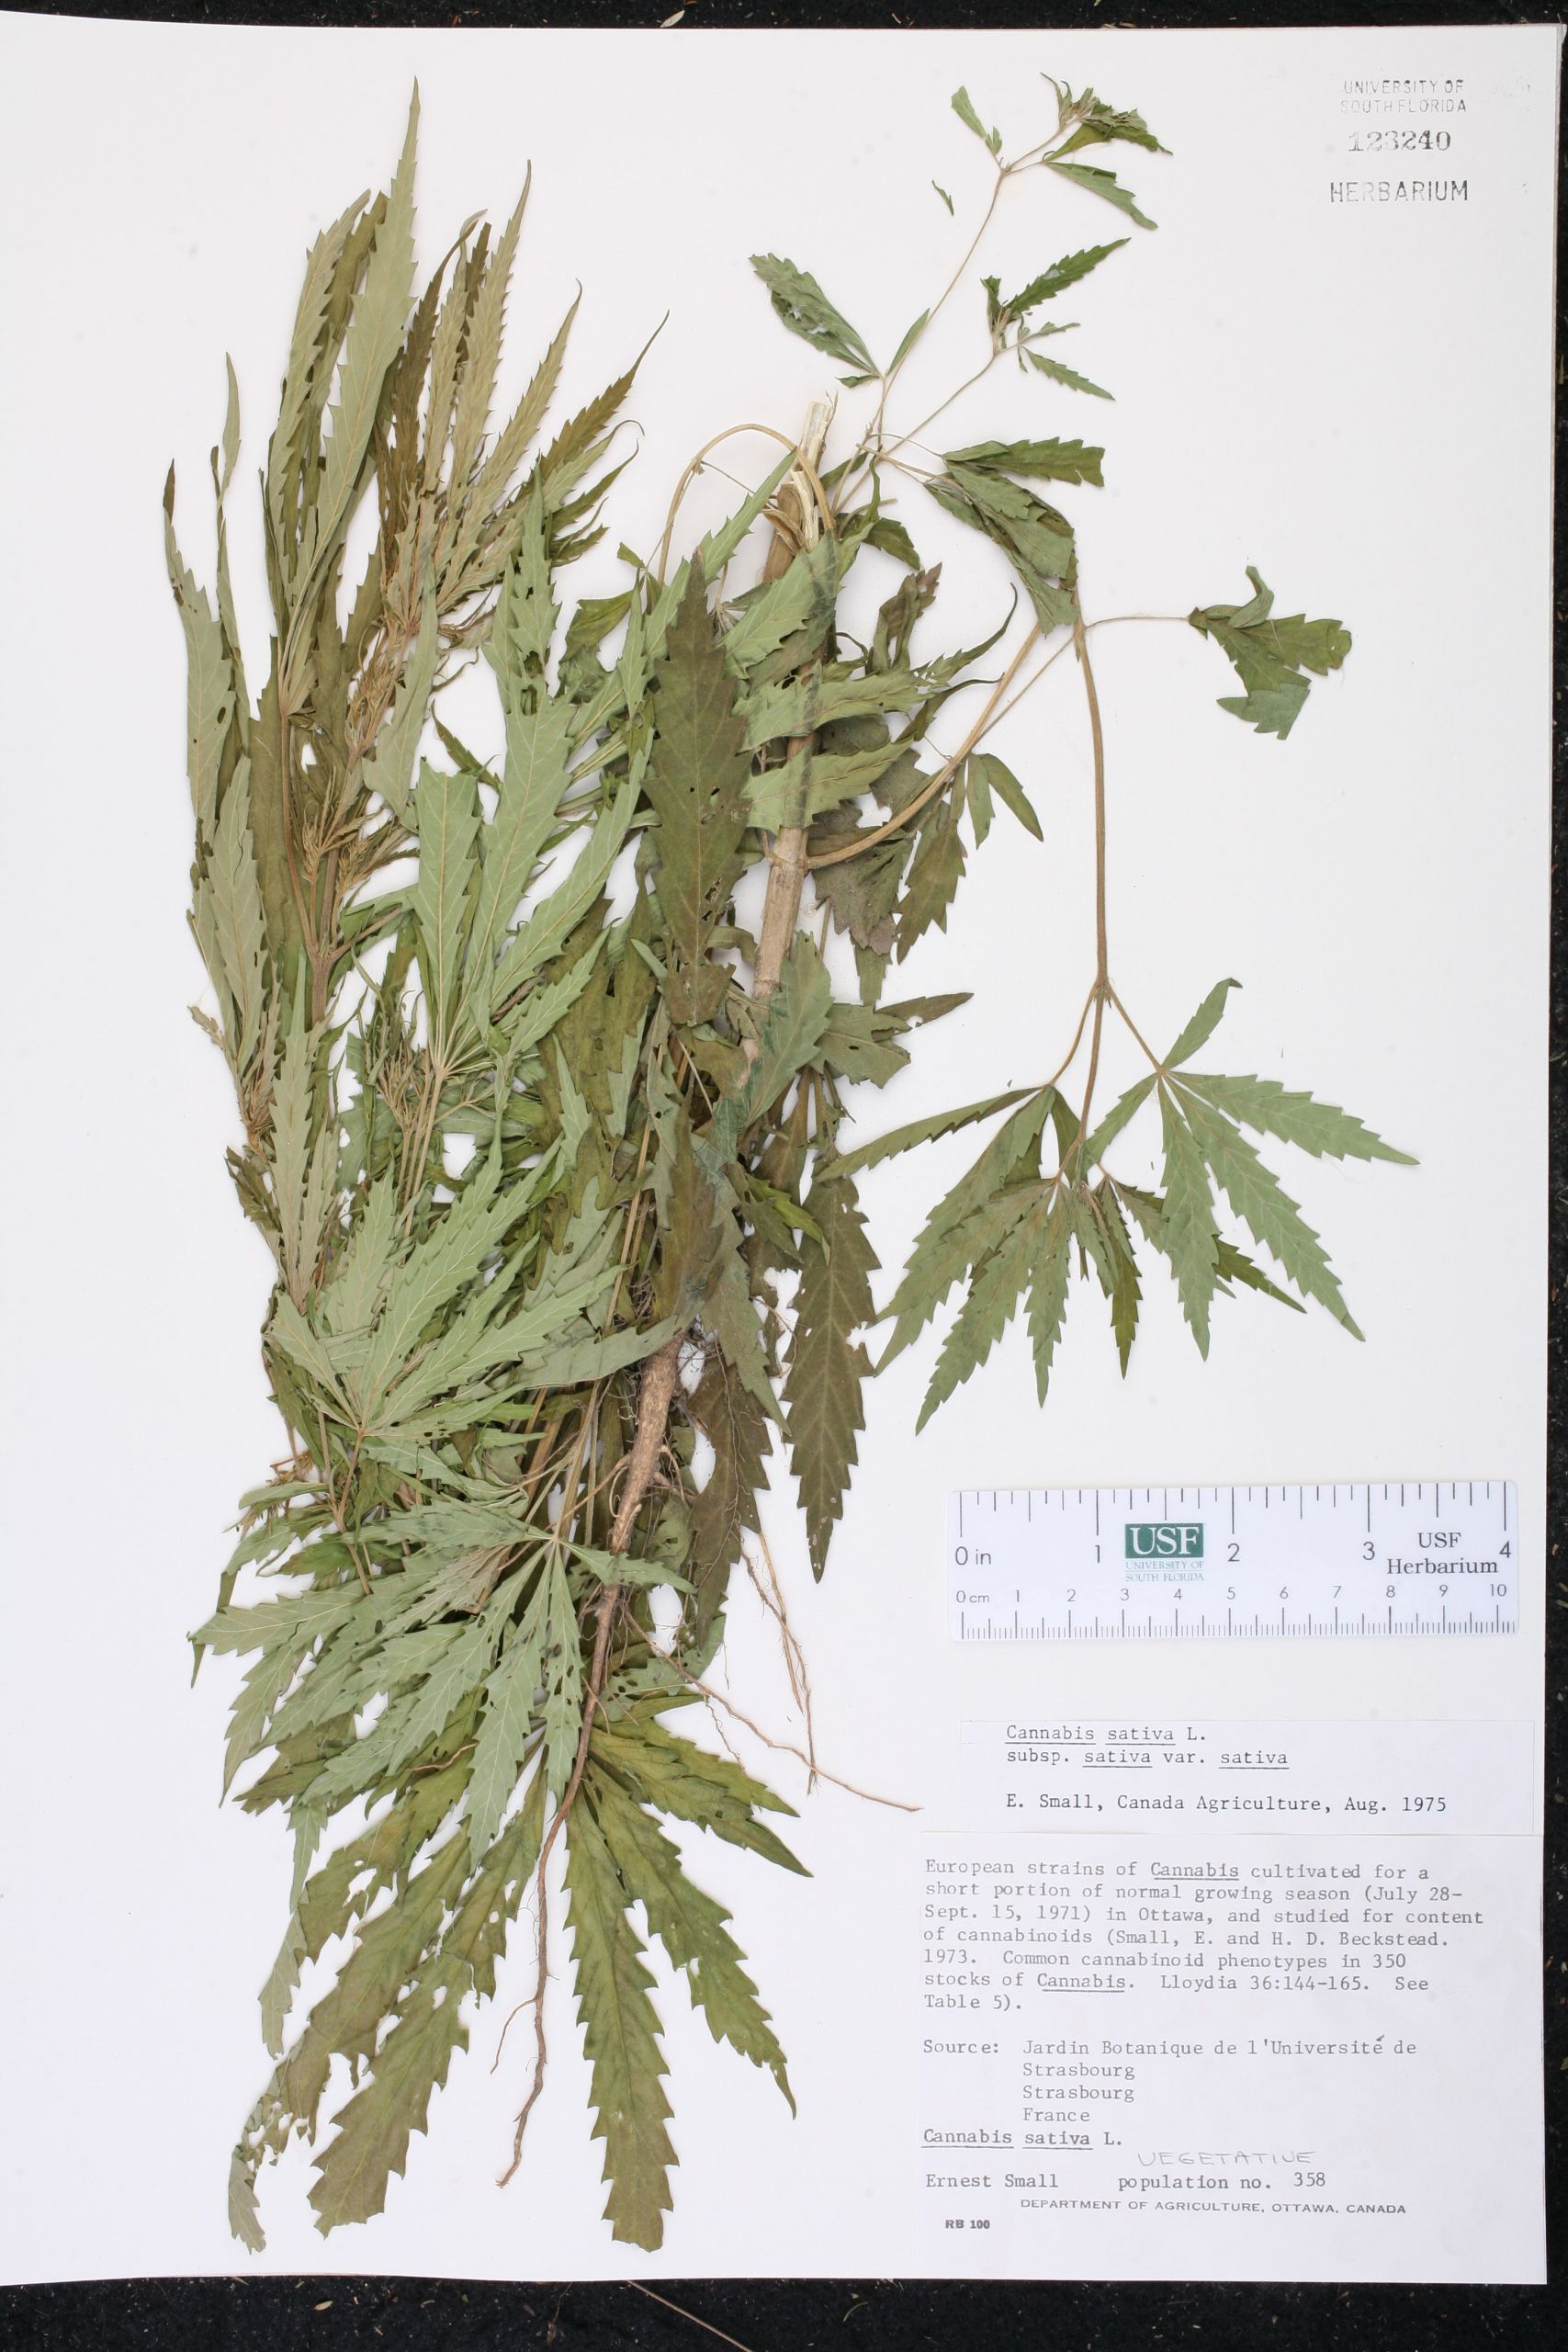 Jardin Des Plantes D Angers Frais Cannabis Sativa Species Page isb atlas Of Florida Plants